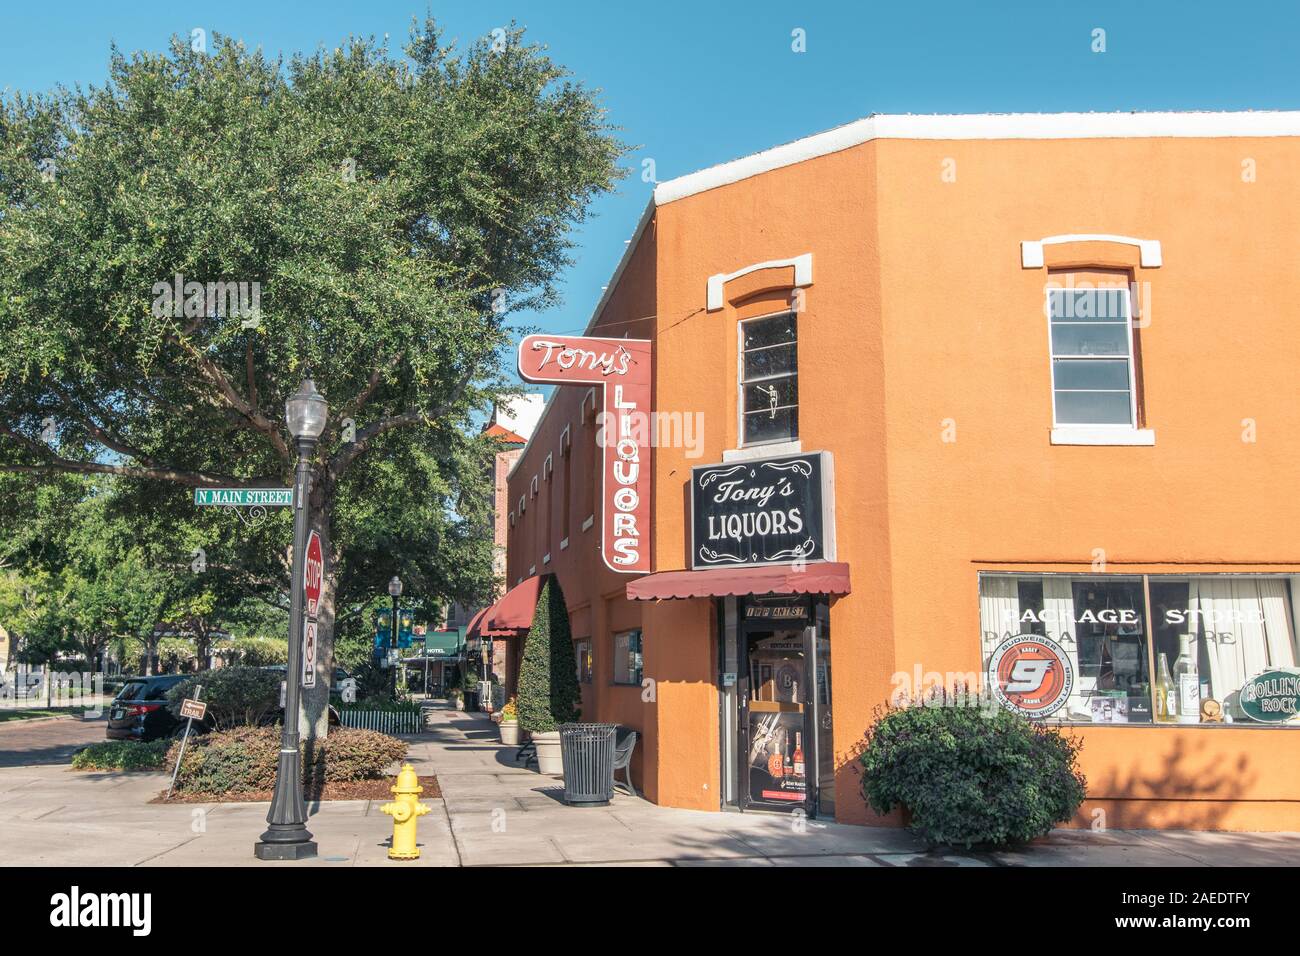 Jardín de invierno, Florida: Mayo 29, 2019 - Tonys licores, una tienda de licor de naranja edificio en la esquina de la calle principal y la planta en la zona centro de la ciudad. Foto de stock